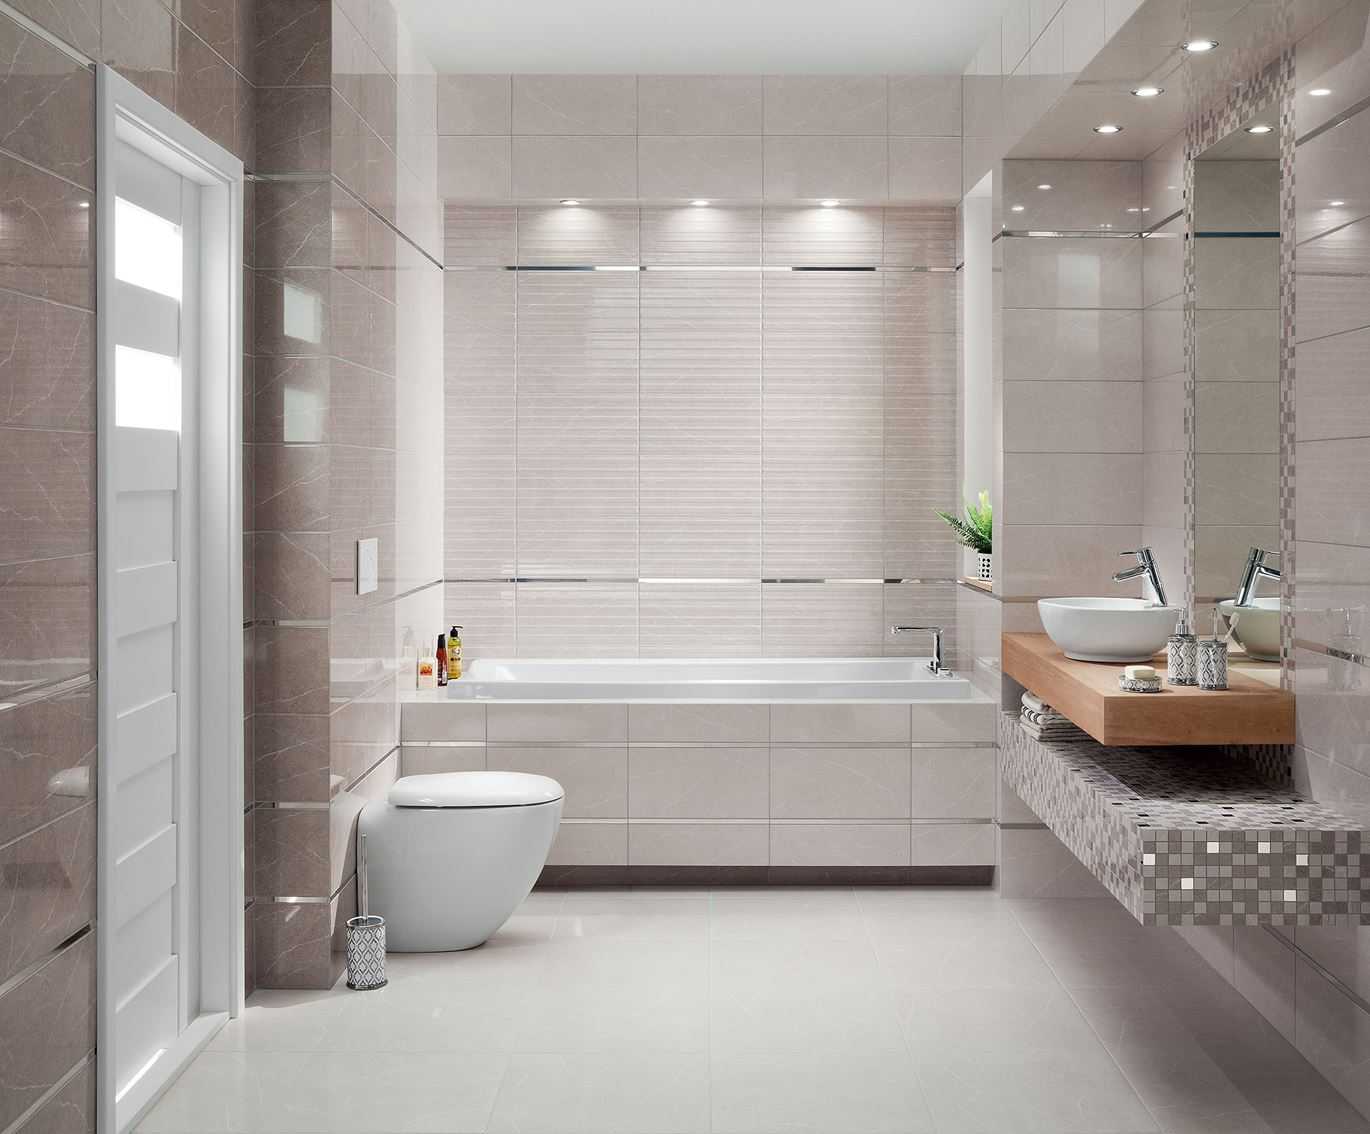 Если грамотно подобрать освещение для небольшой ванной комнаты, то можно визуально расширить пространство. Теперь поговорим об освещении. Тепло плюс высокая